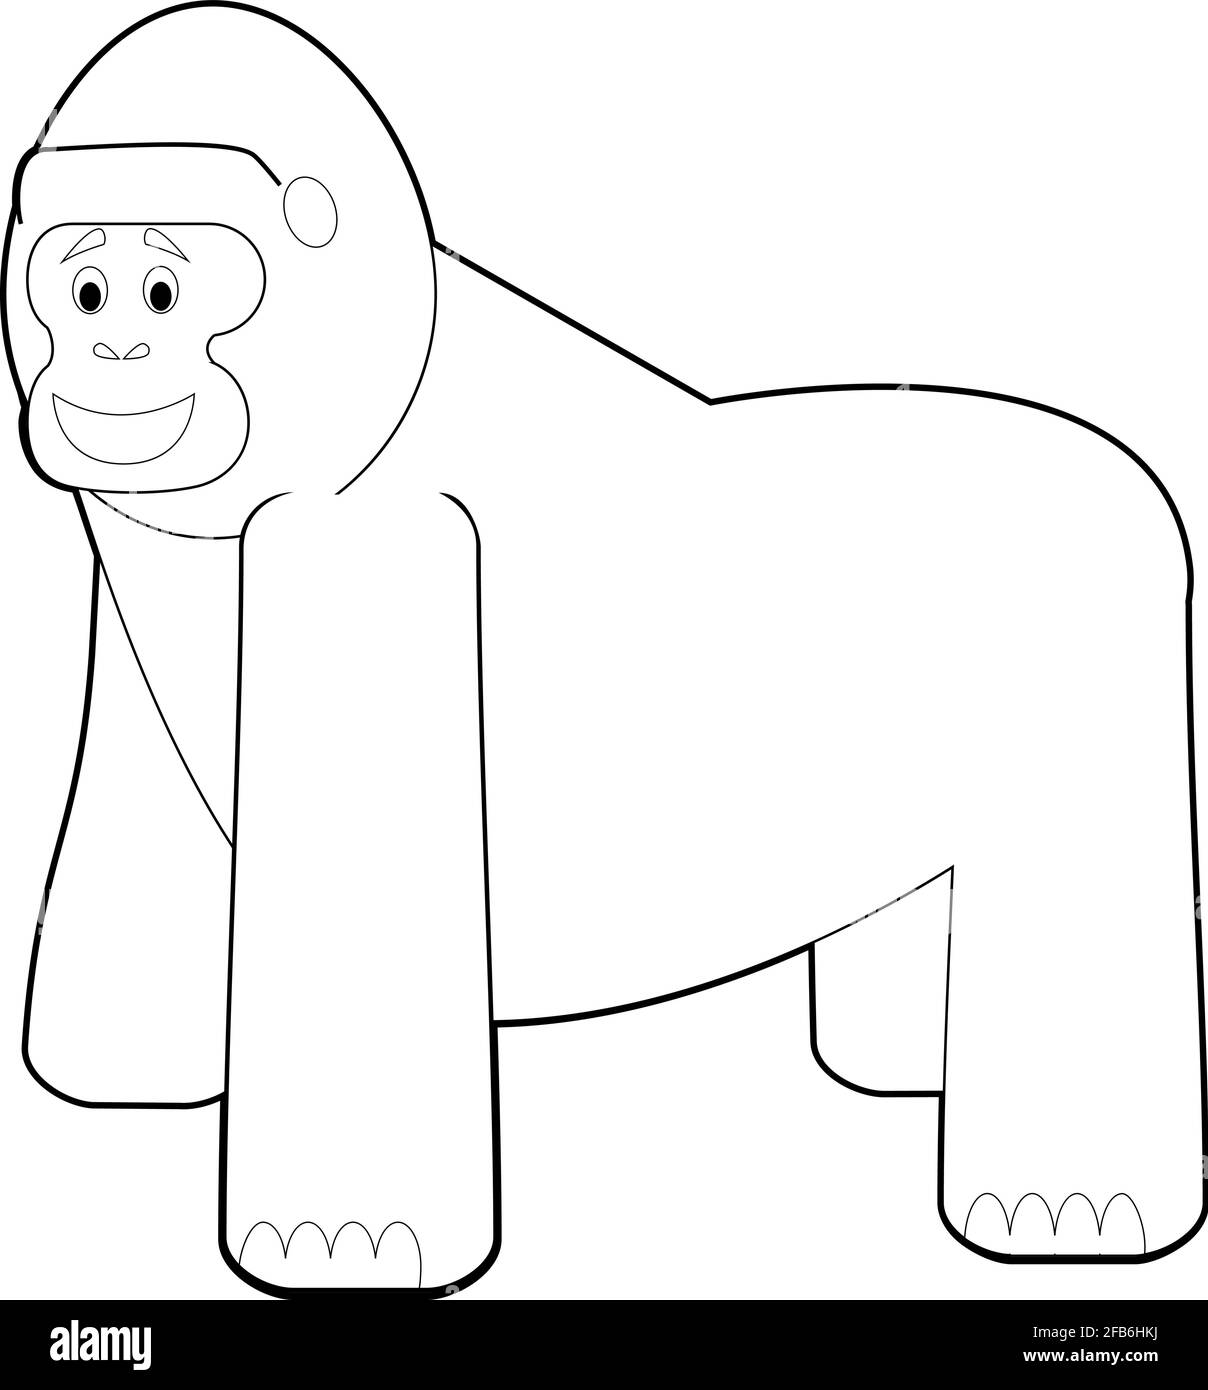 Disegni Facili Da Colorare Di Animali Per Bambini Piccoli Gorilla Immagine E Vettoriale Alamy